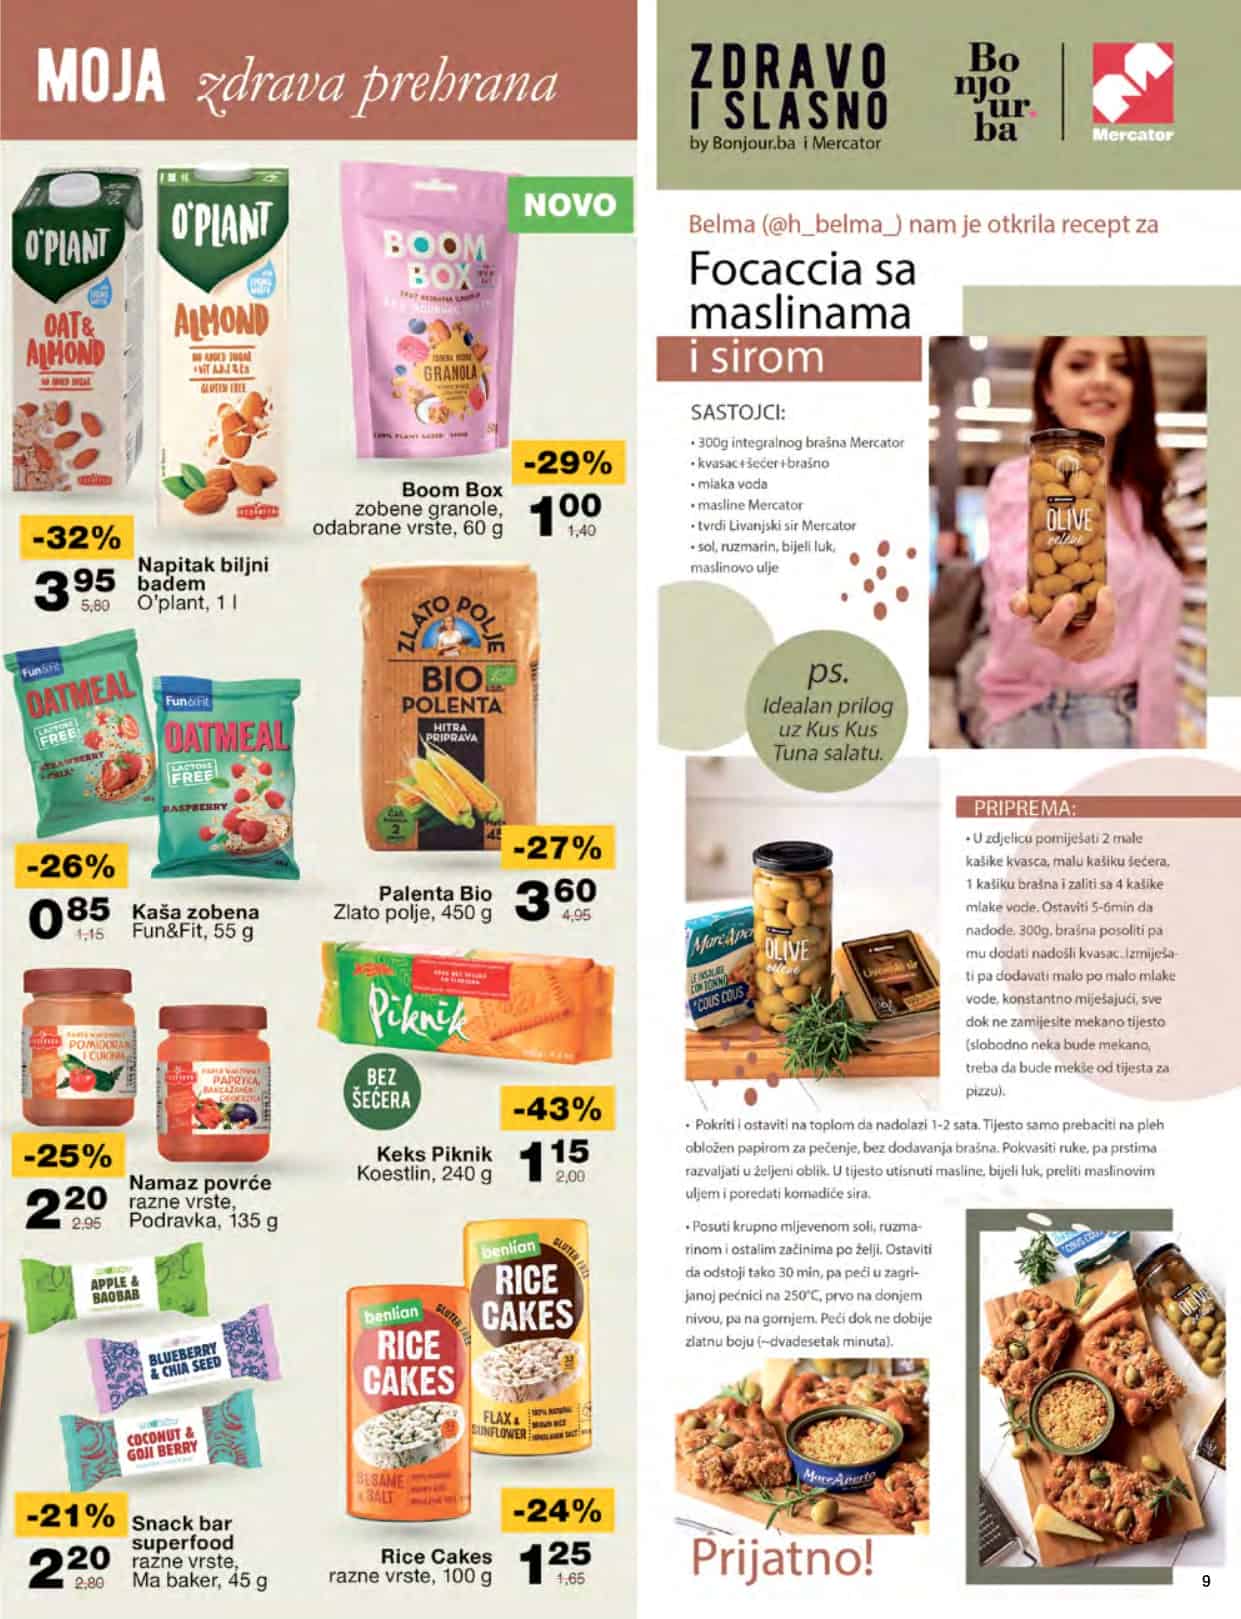 mercator katalog donosi nam super akcijske cijene hrane, kucne hemije, proizvoda za bebe! Posjetite Mercator prodavnice i uzivajte u sniženim cijenama!